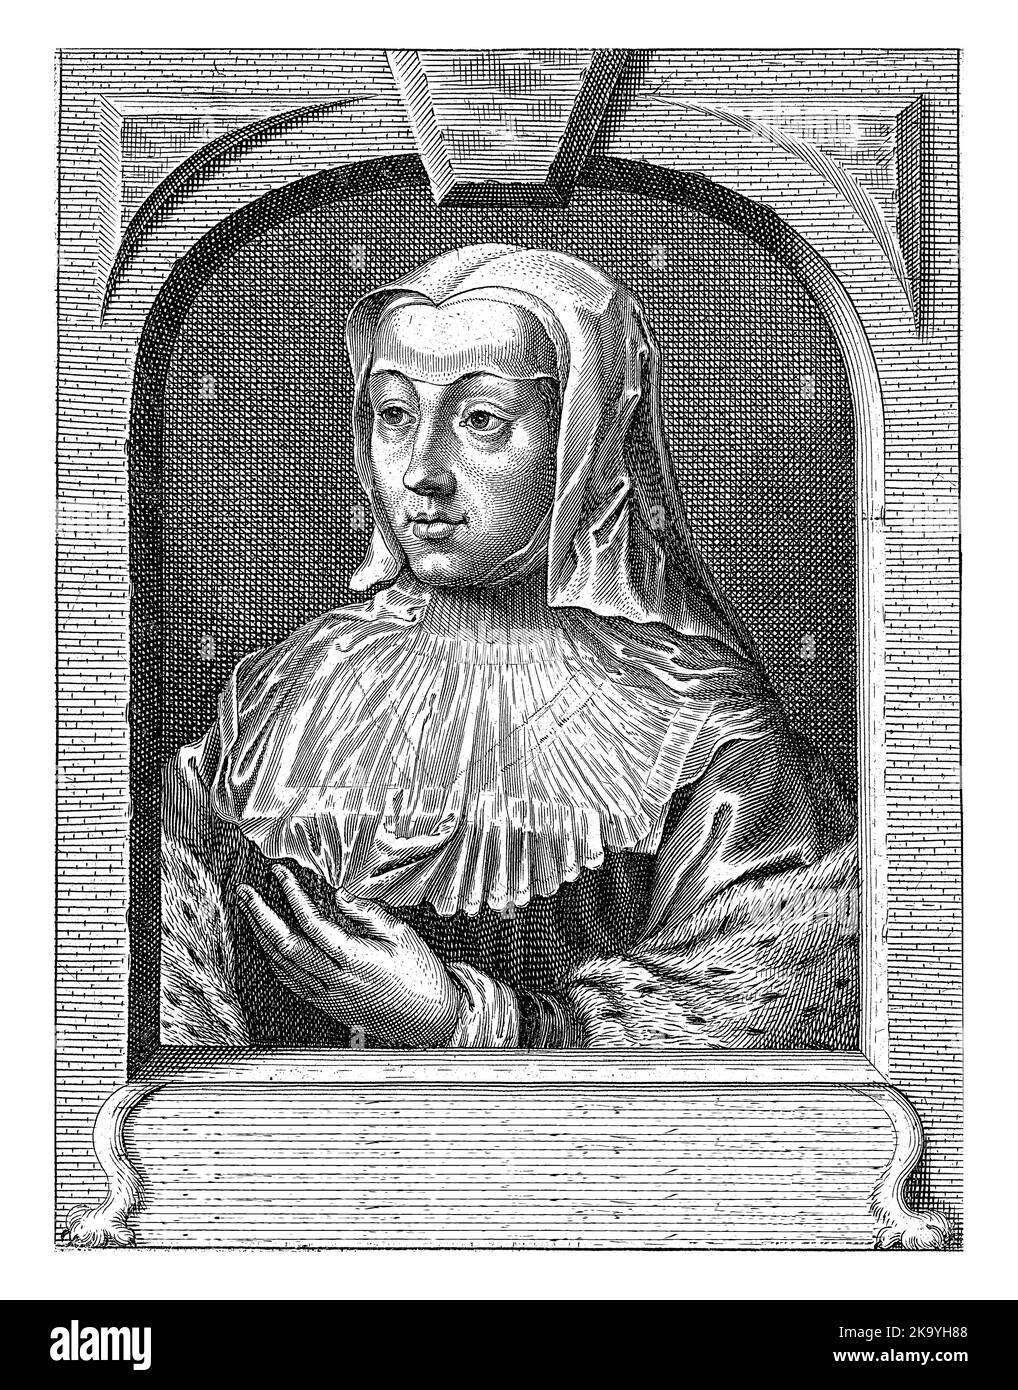 Busto ritratto di Margherita d'Austria, duchessa di Savoia, con cappuccio bianco. Tiene la mano sinistra al petto. Il ritratto è incorniciato a forma di arco Foto Stock